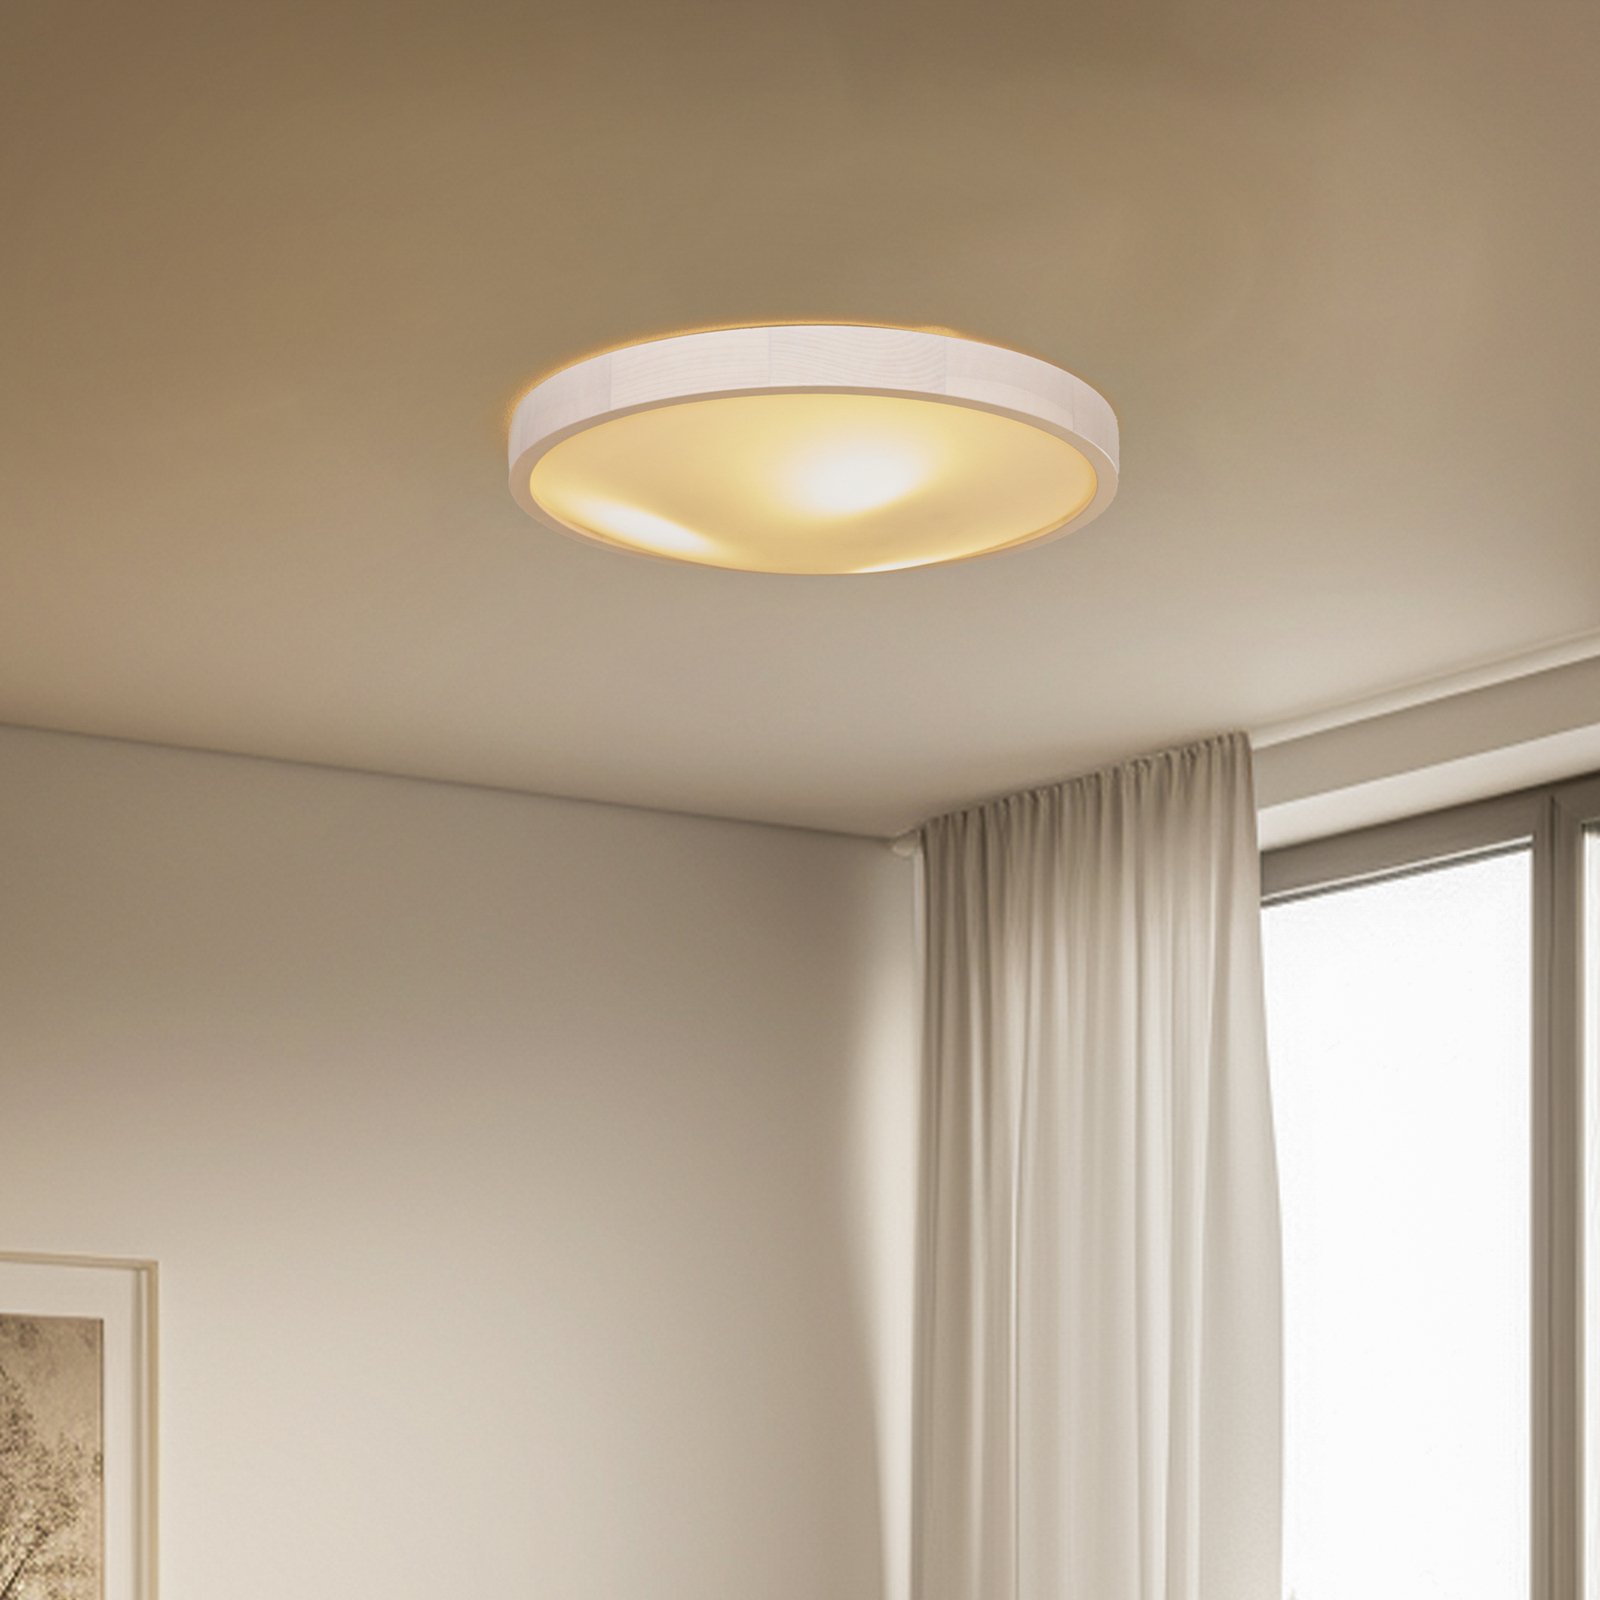 Envostar Kris ceiling light, Ø 47.5 cm, white